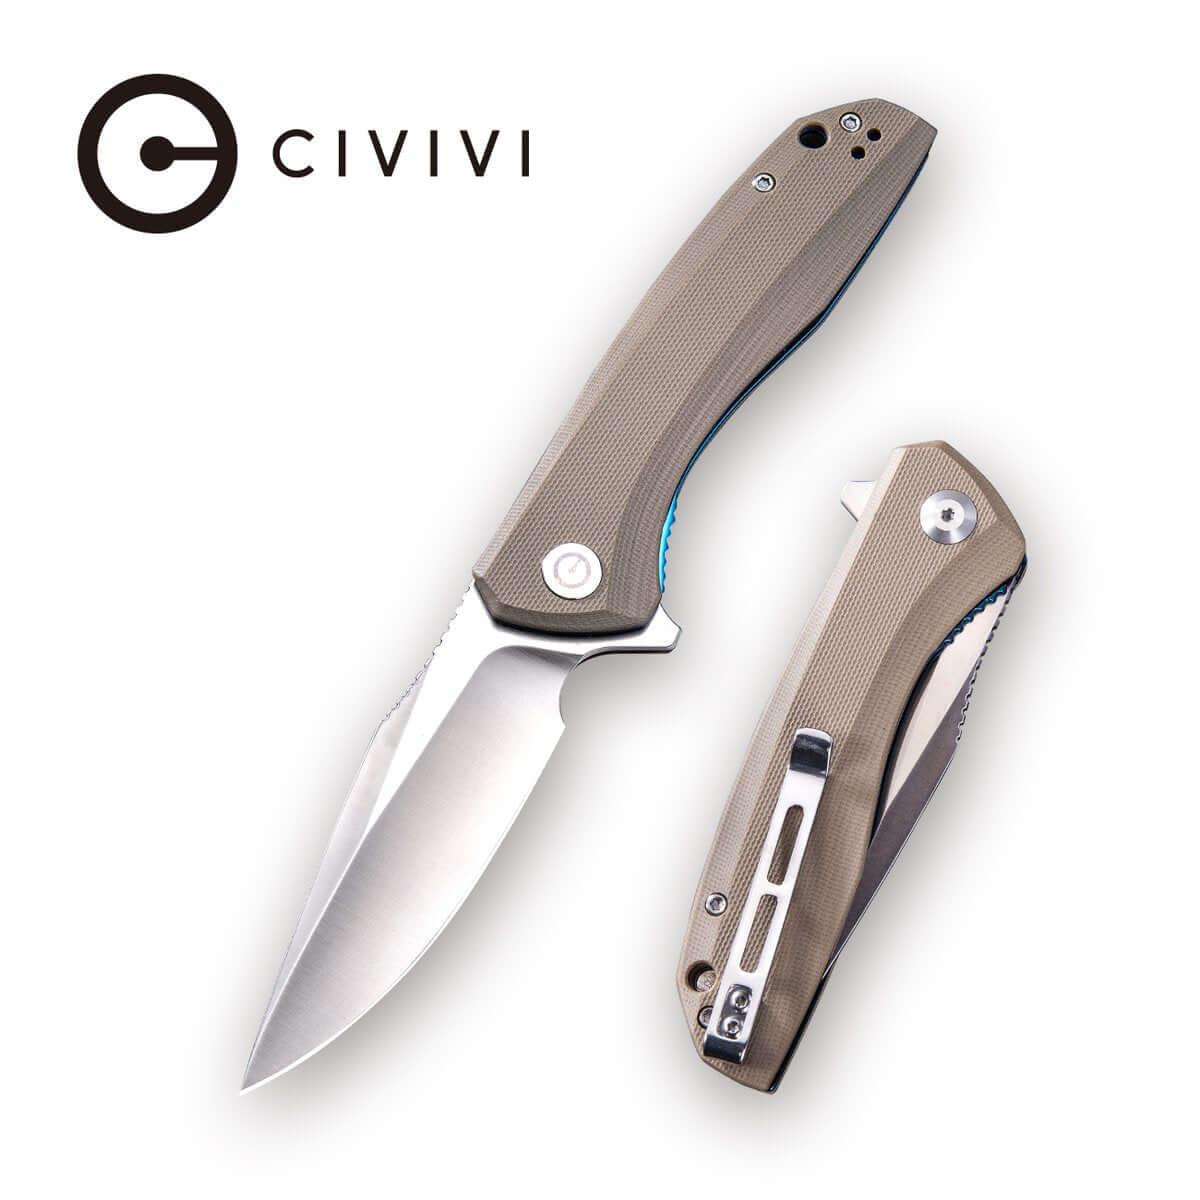 Civivi Baklash Linerlock Tan G10 9Cr18MoV - Knives.mx